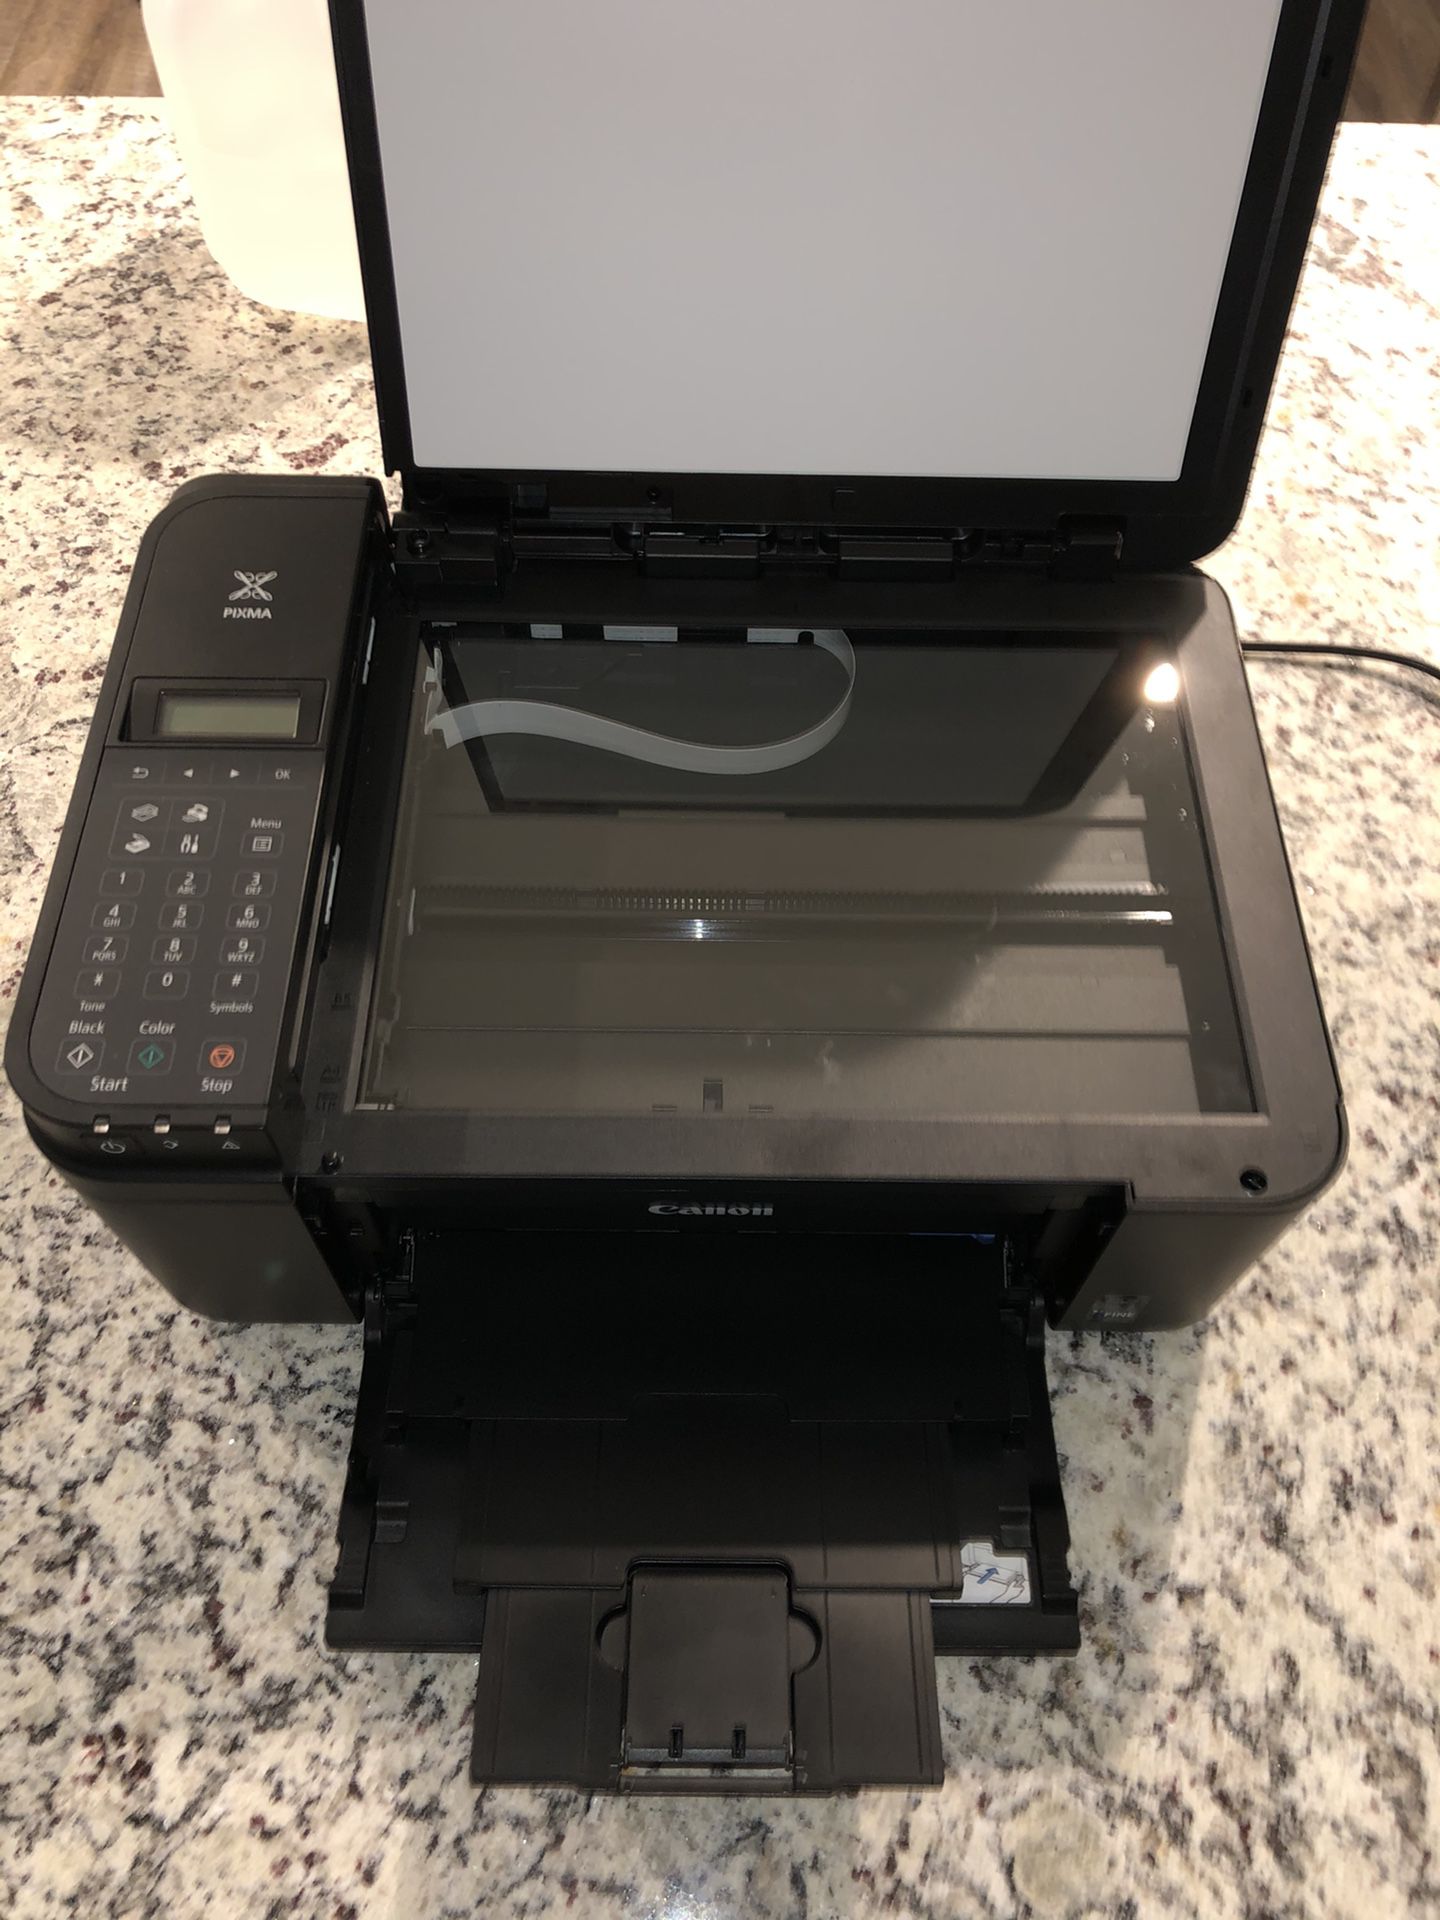 Canon Pixma Mx490 All-in-one Printer/ copier/ scanner/ fax machine